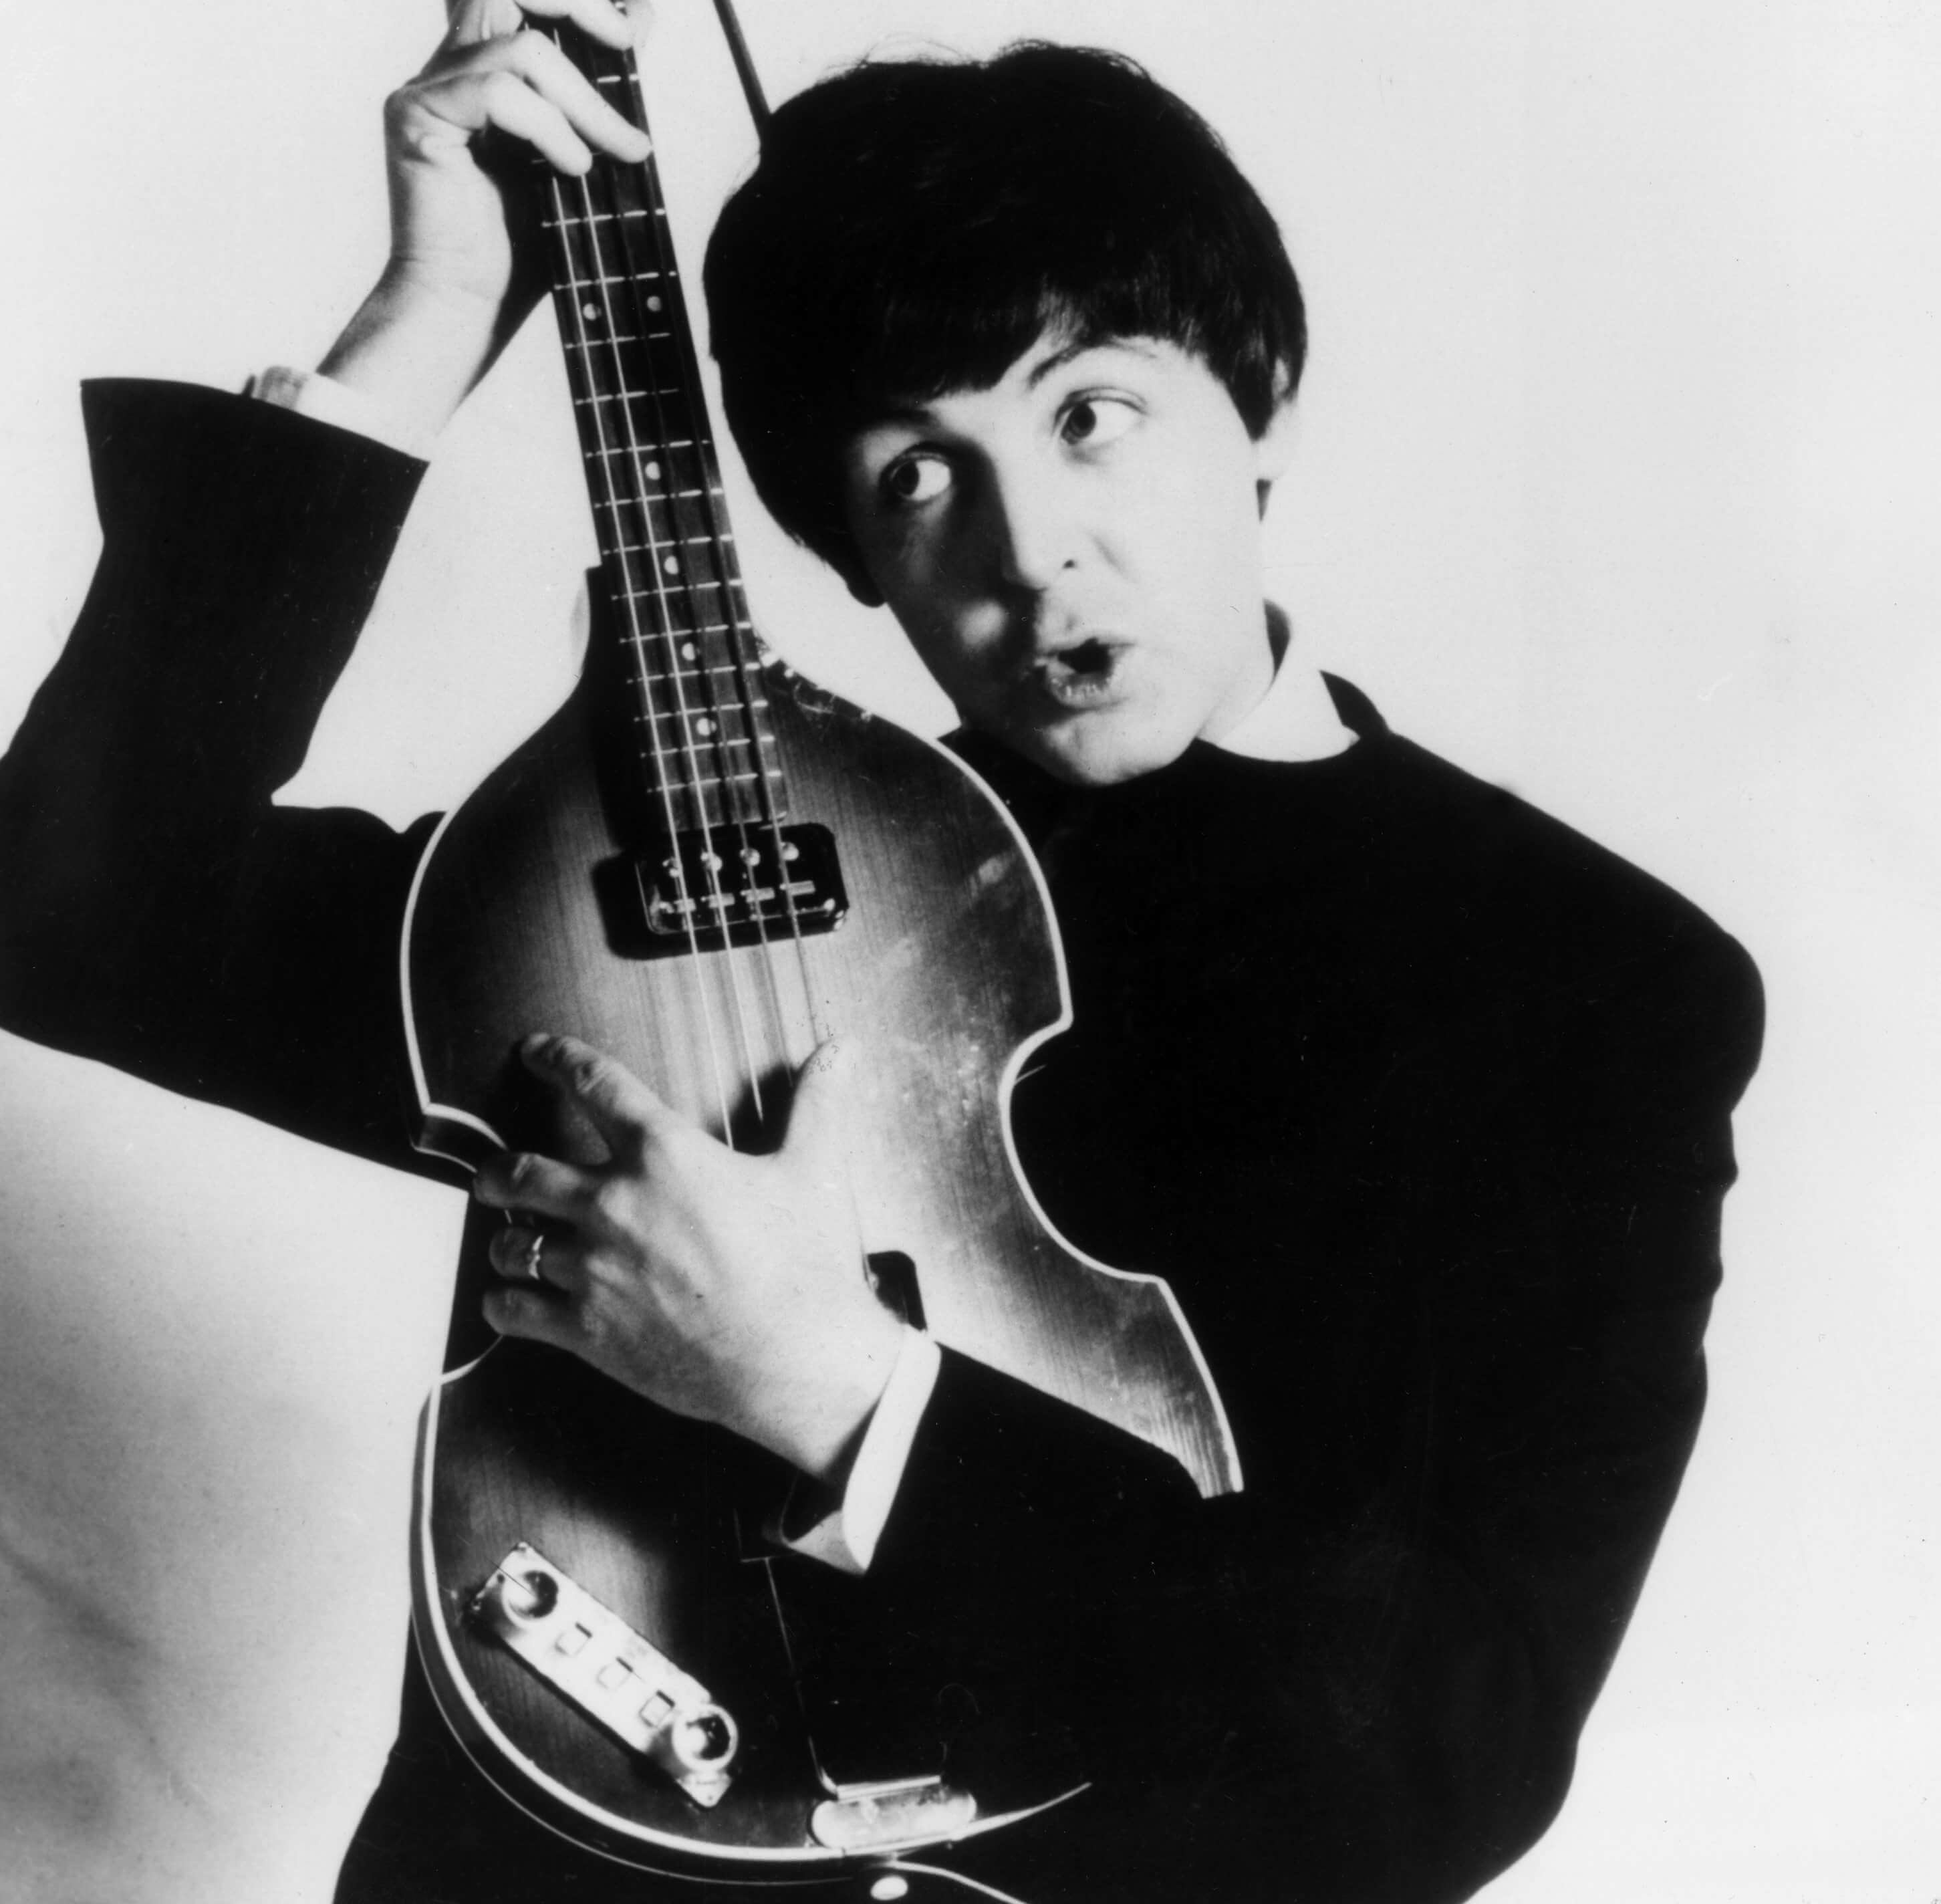 Paul McCartney with a guitar